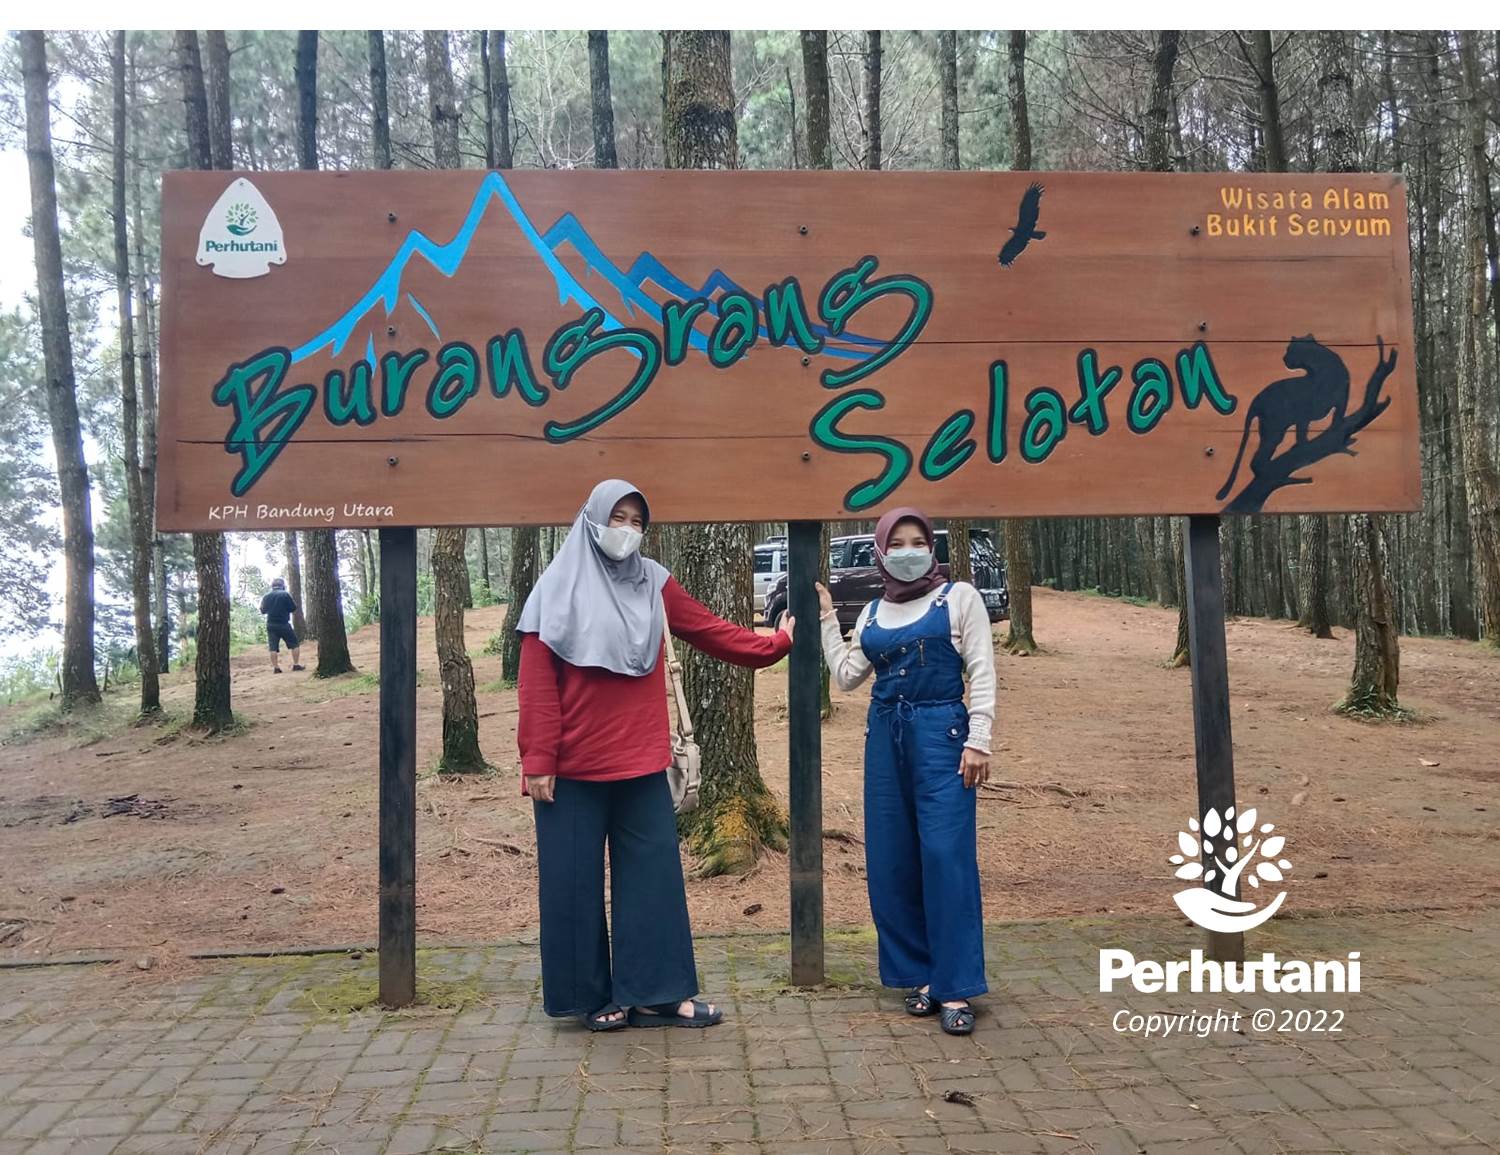 Perhutani Wisata Bukit Senyum Kph Bandung Utara Menjadi Wisata Favorit Di Bandung Barat Selain 7604